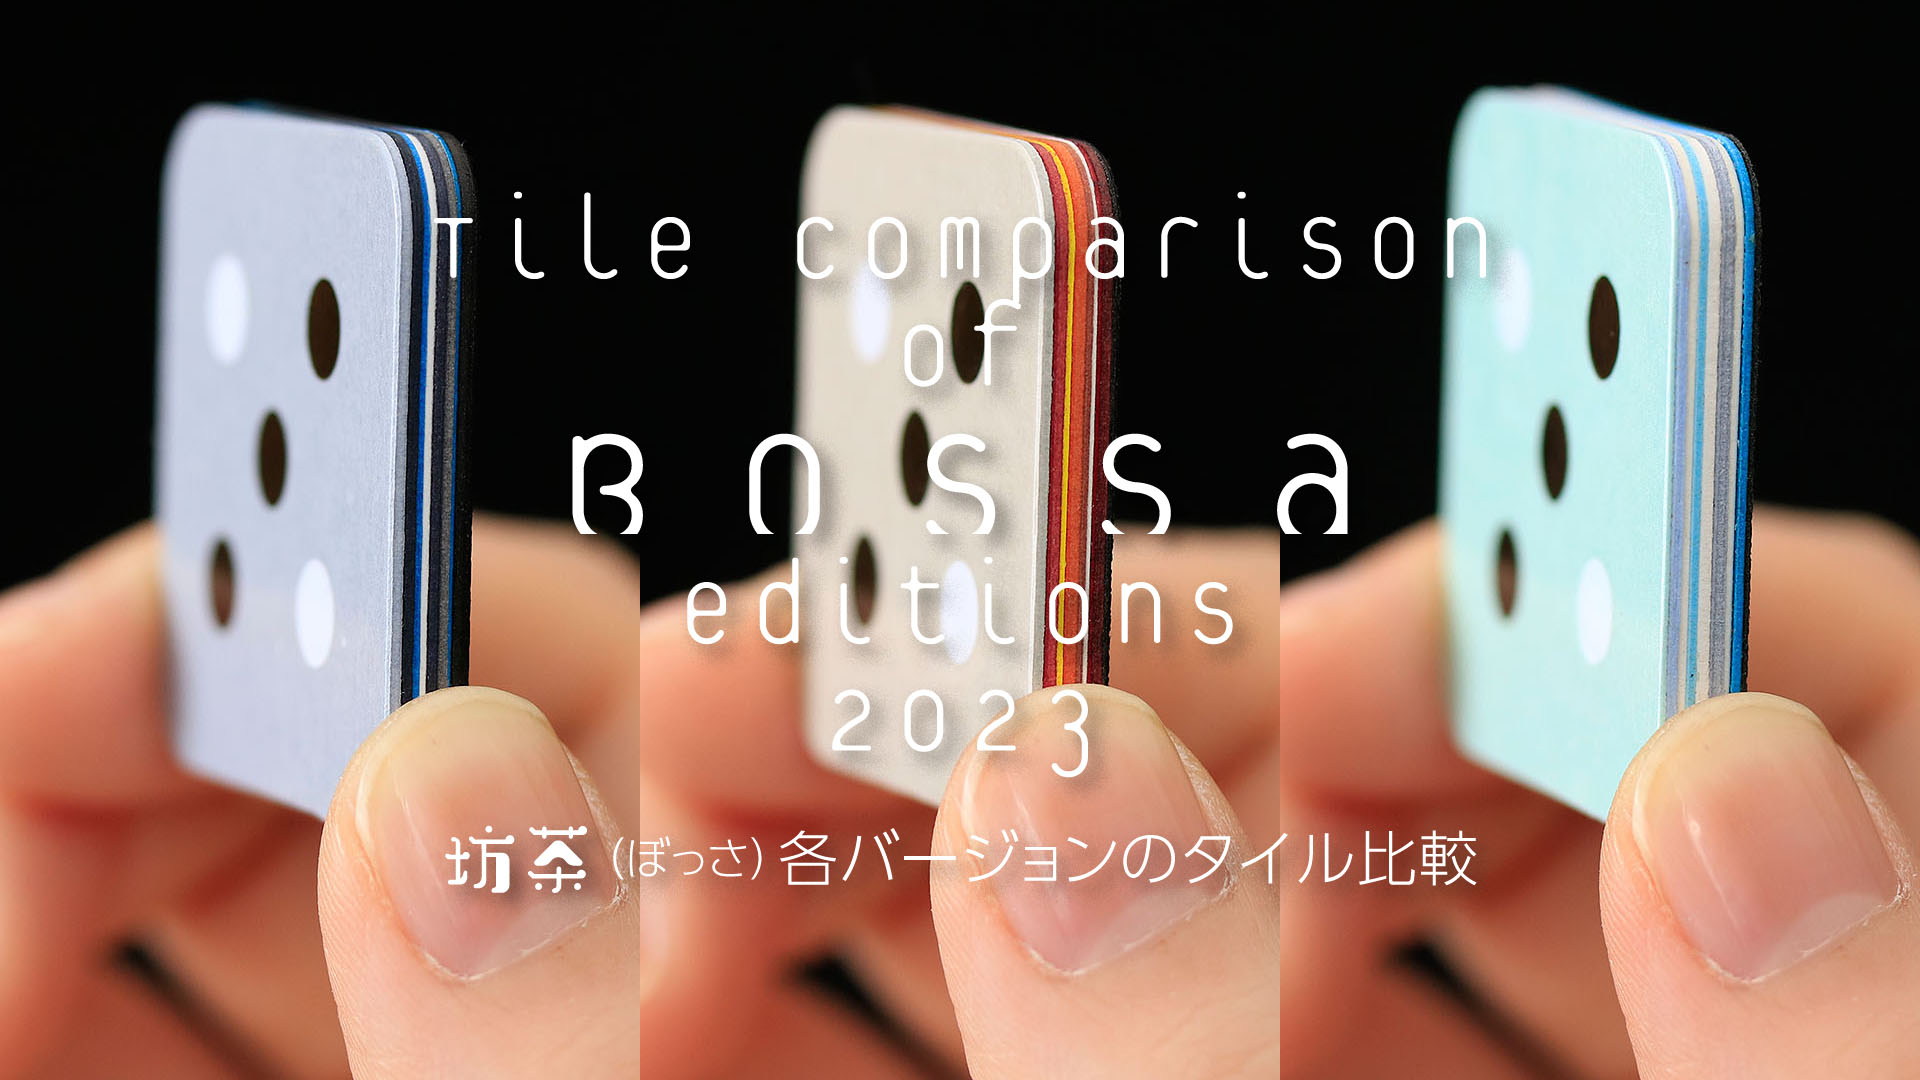 Tile Comparison of Bossa, Board Game PV